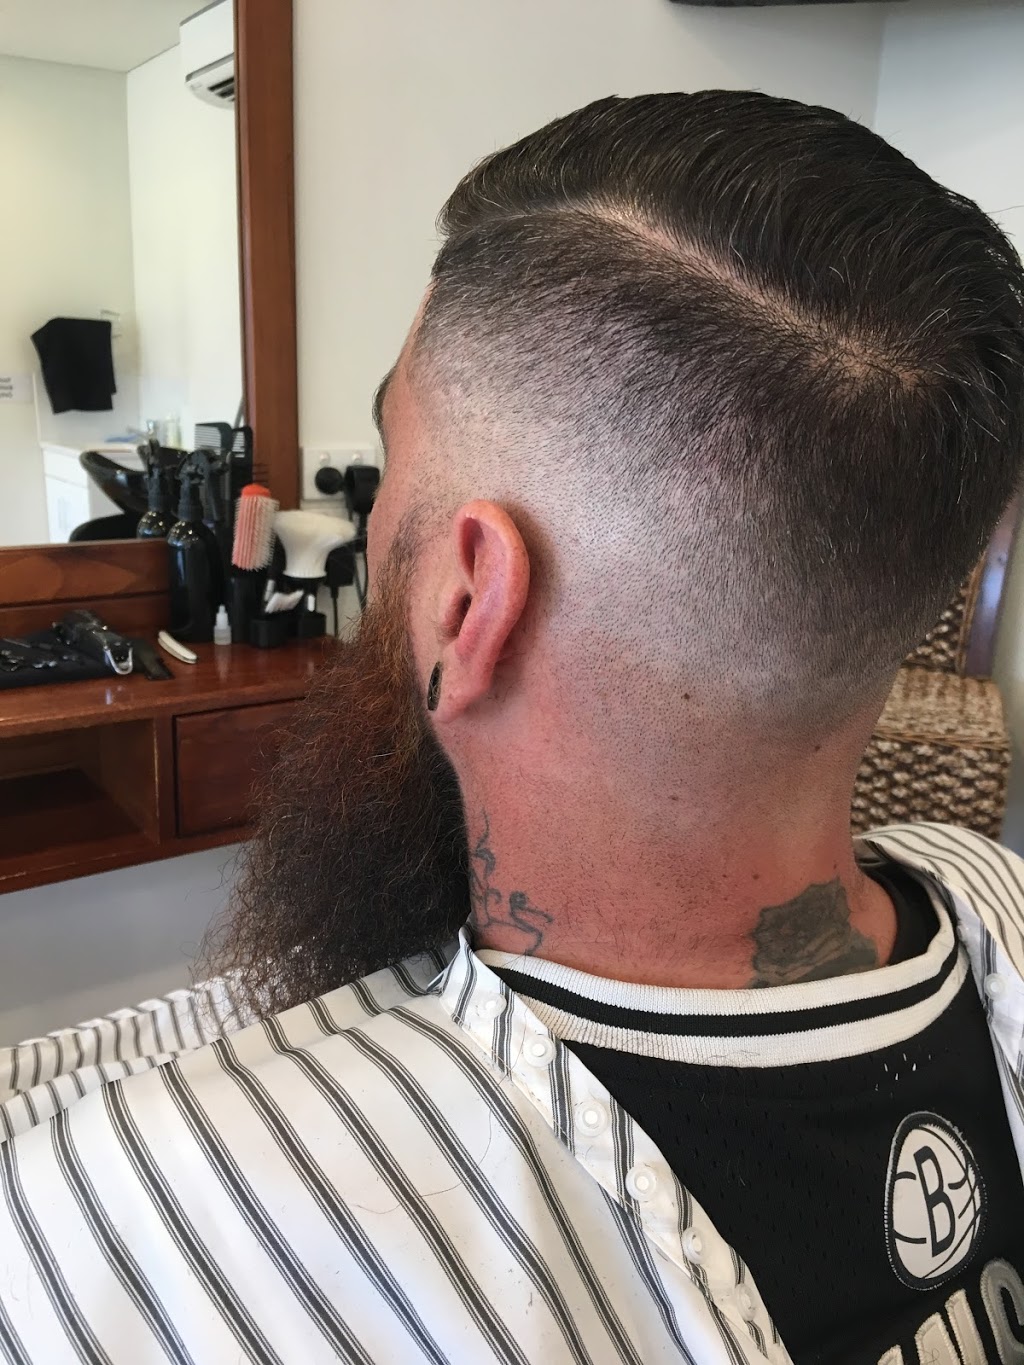 Stevie Petes Mens Cuts | hair care | 371 Heaths Rd, Werribee VIC 3030, Australia | 0422861016 OR +61 422 861 016